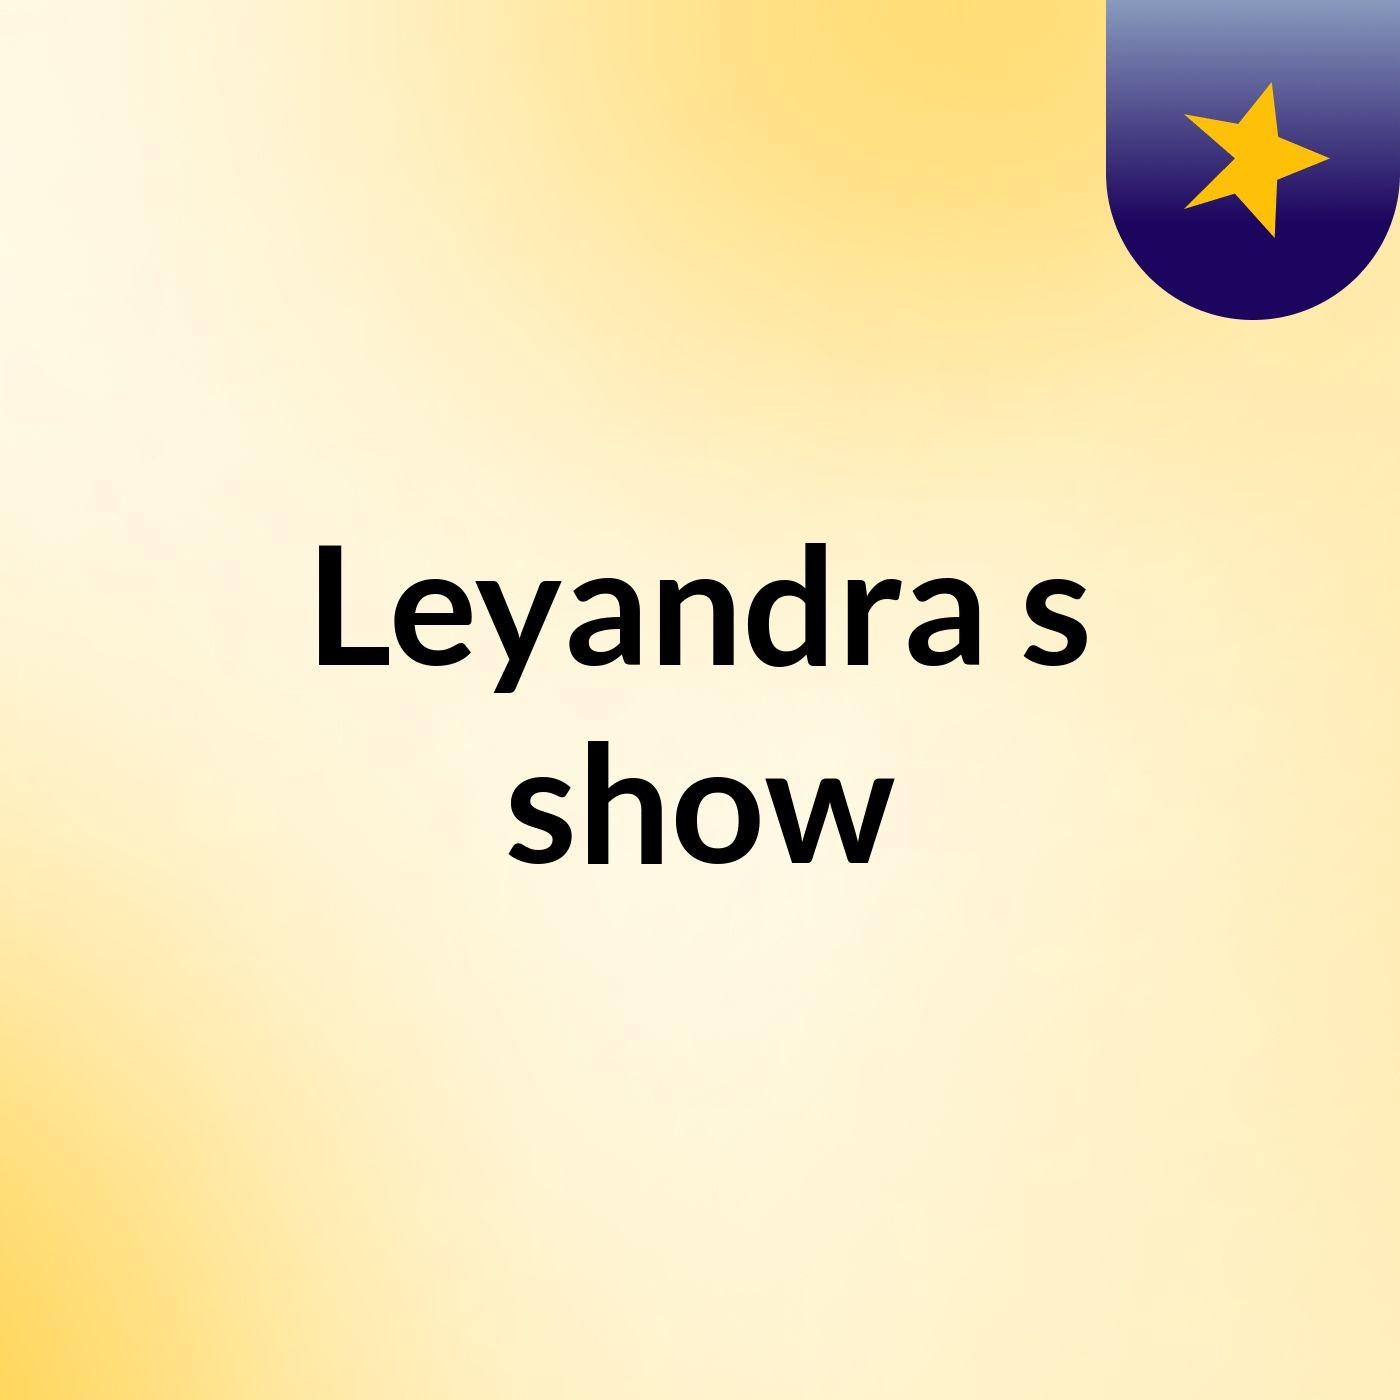 Leyandra's show